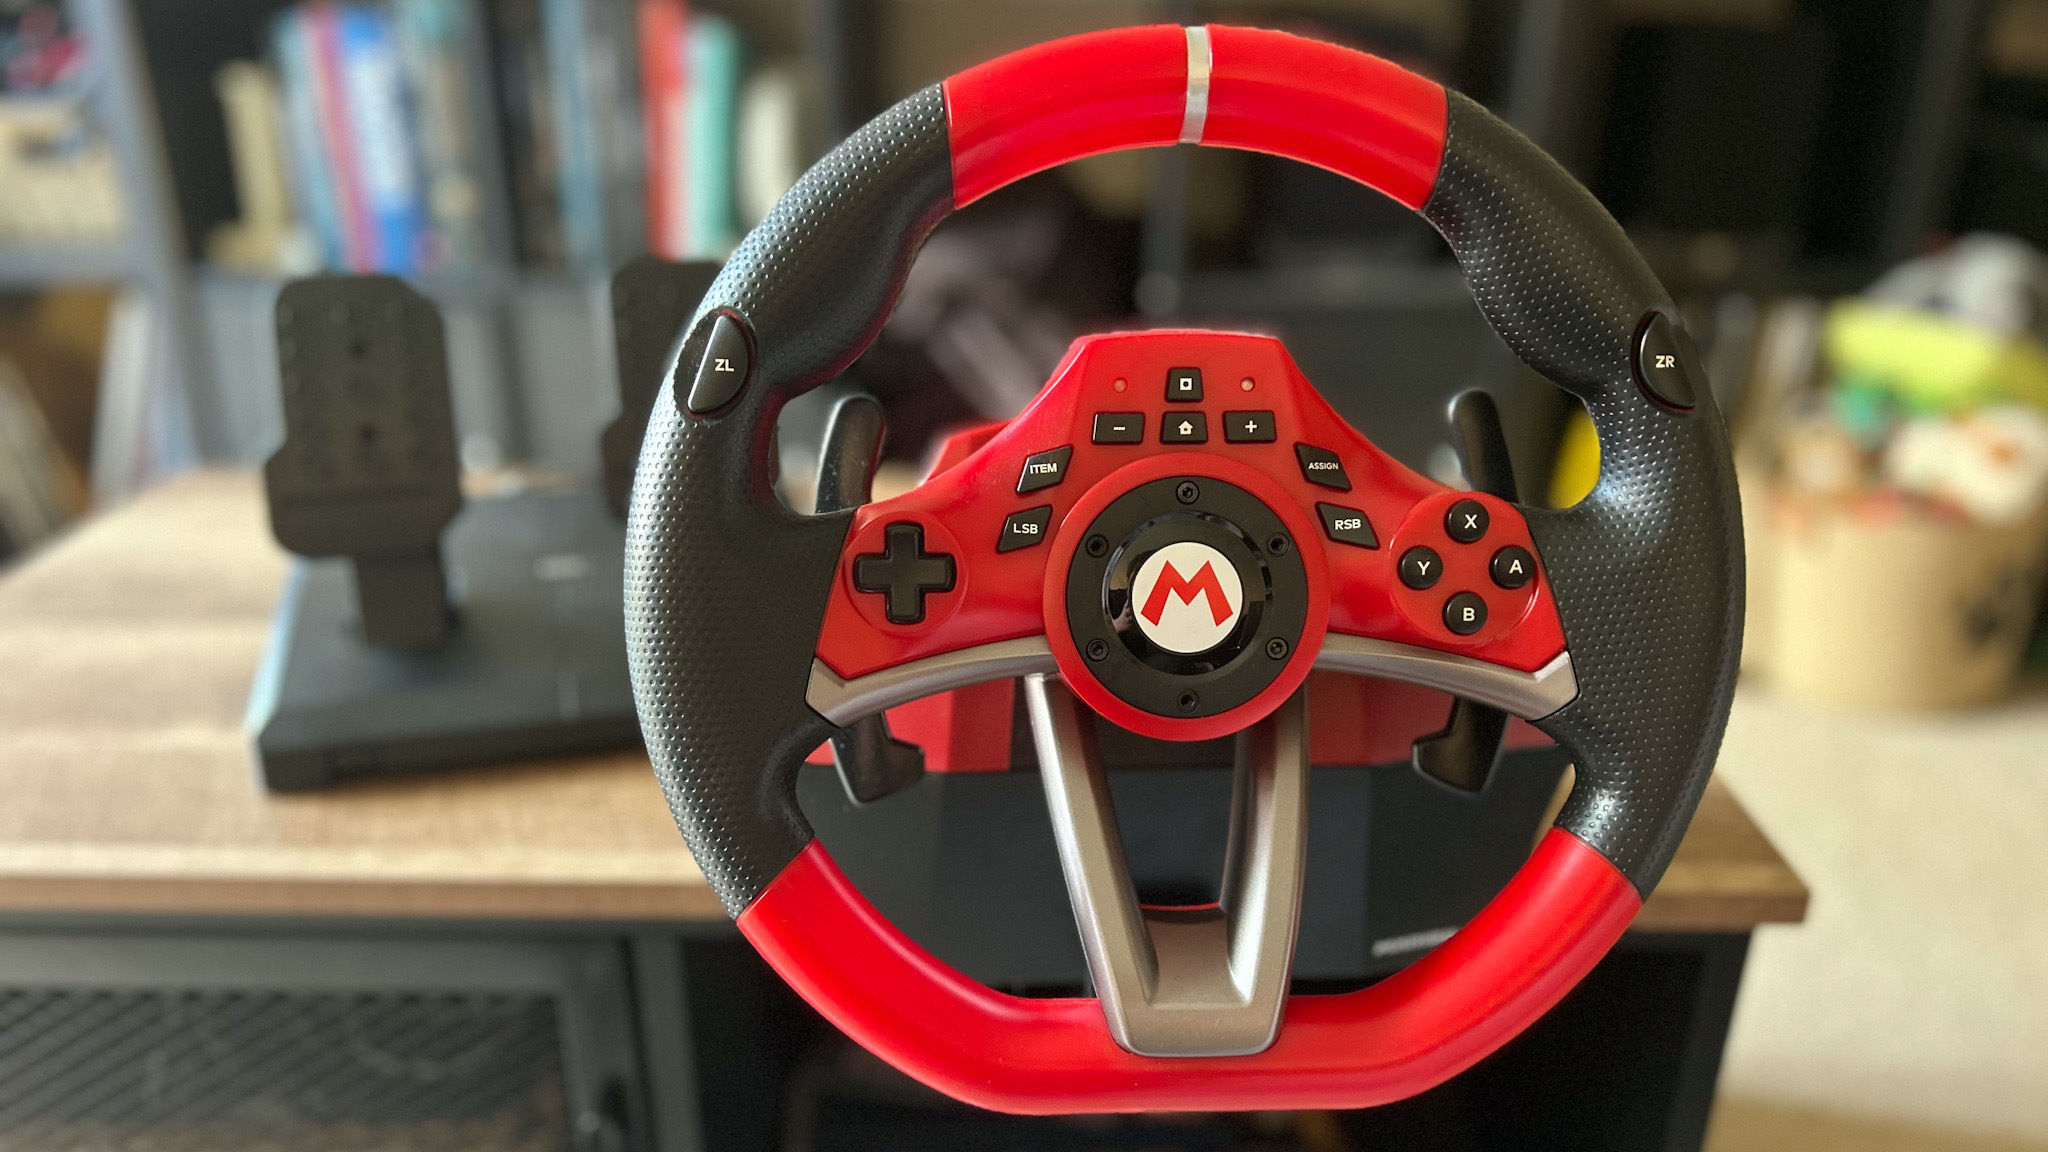 Hori Mario Kart Racing Wheel Pro Deluxe Review 0336